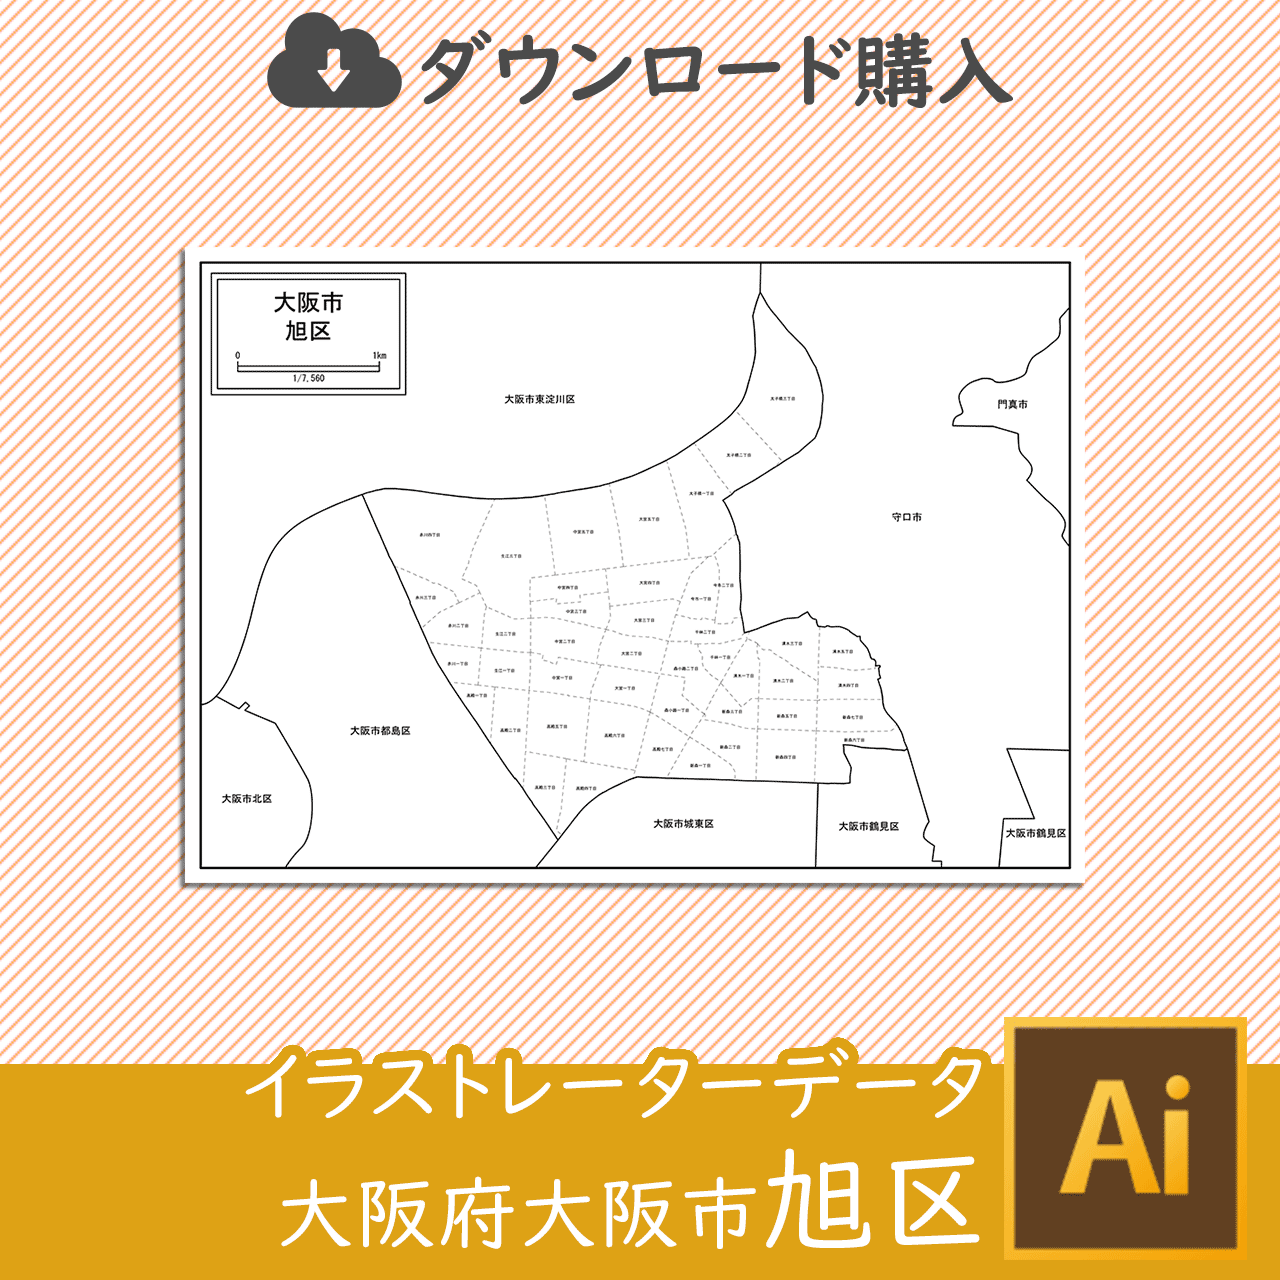 大阪市旭区のaiデータのサムネイル画像